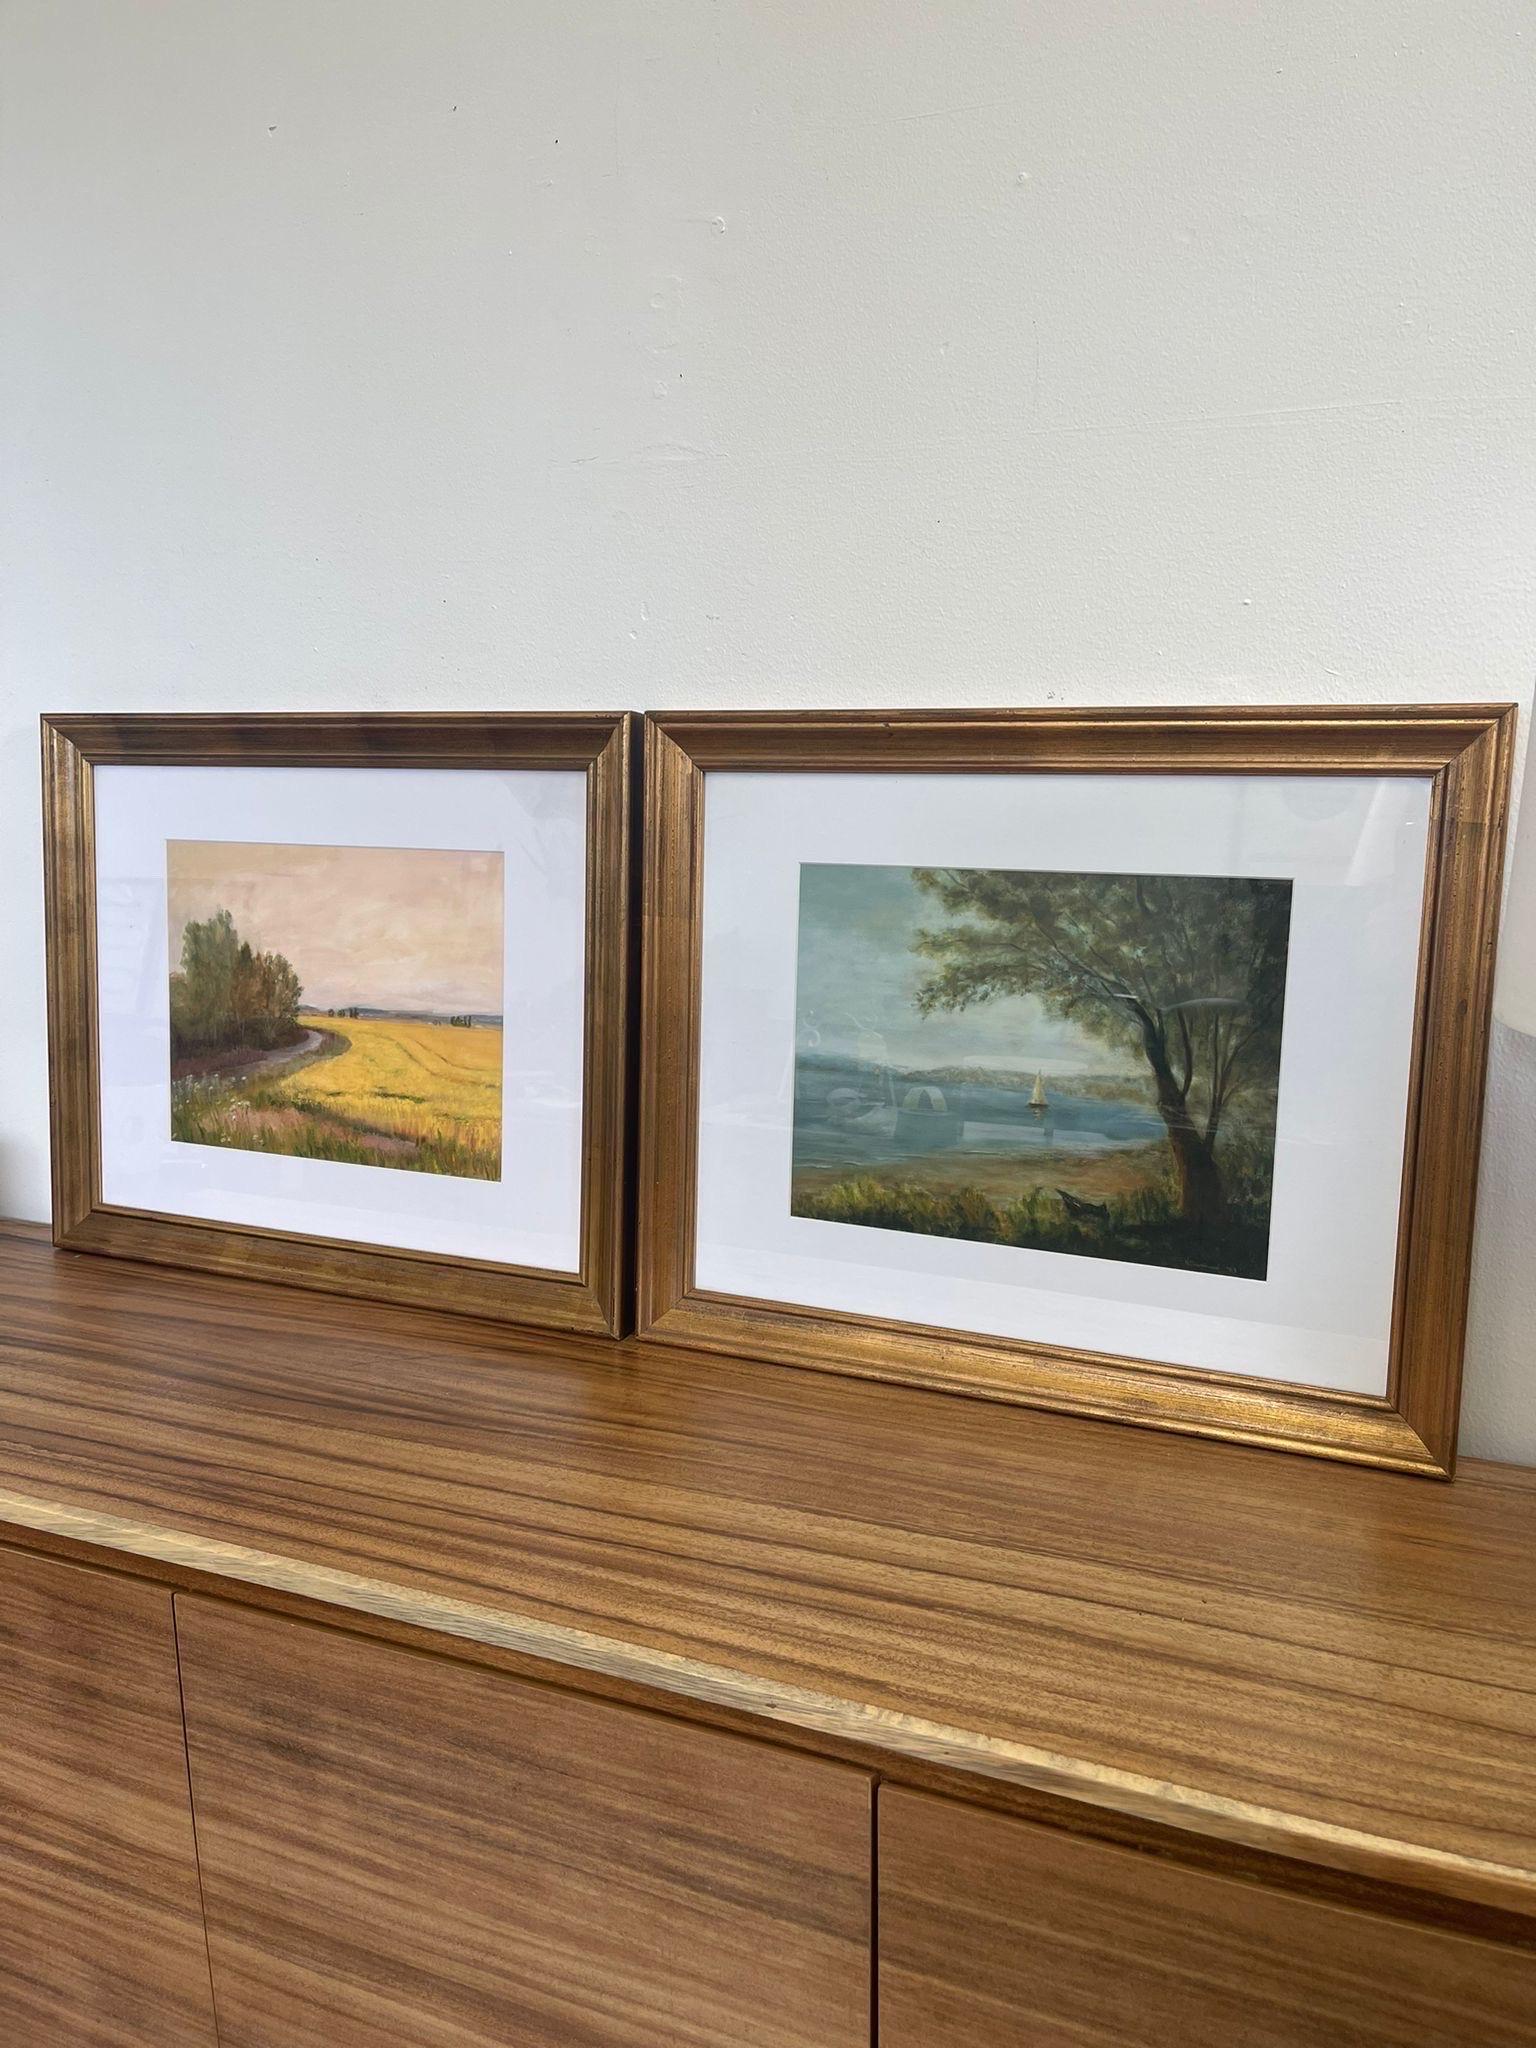 Helen Drummond est une Artistics basée à Seattle, spécialisée dans la peinture à l'huile. Ce couple présente un paysage de plage et un paysage de champs. La marque de l'artiste se trouve au dos de l'œuvre, comme indiqué sur la photo. Encadré et